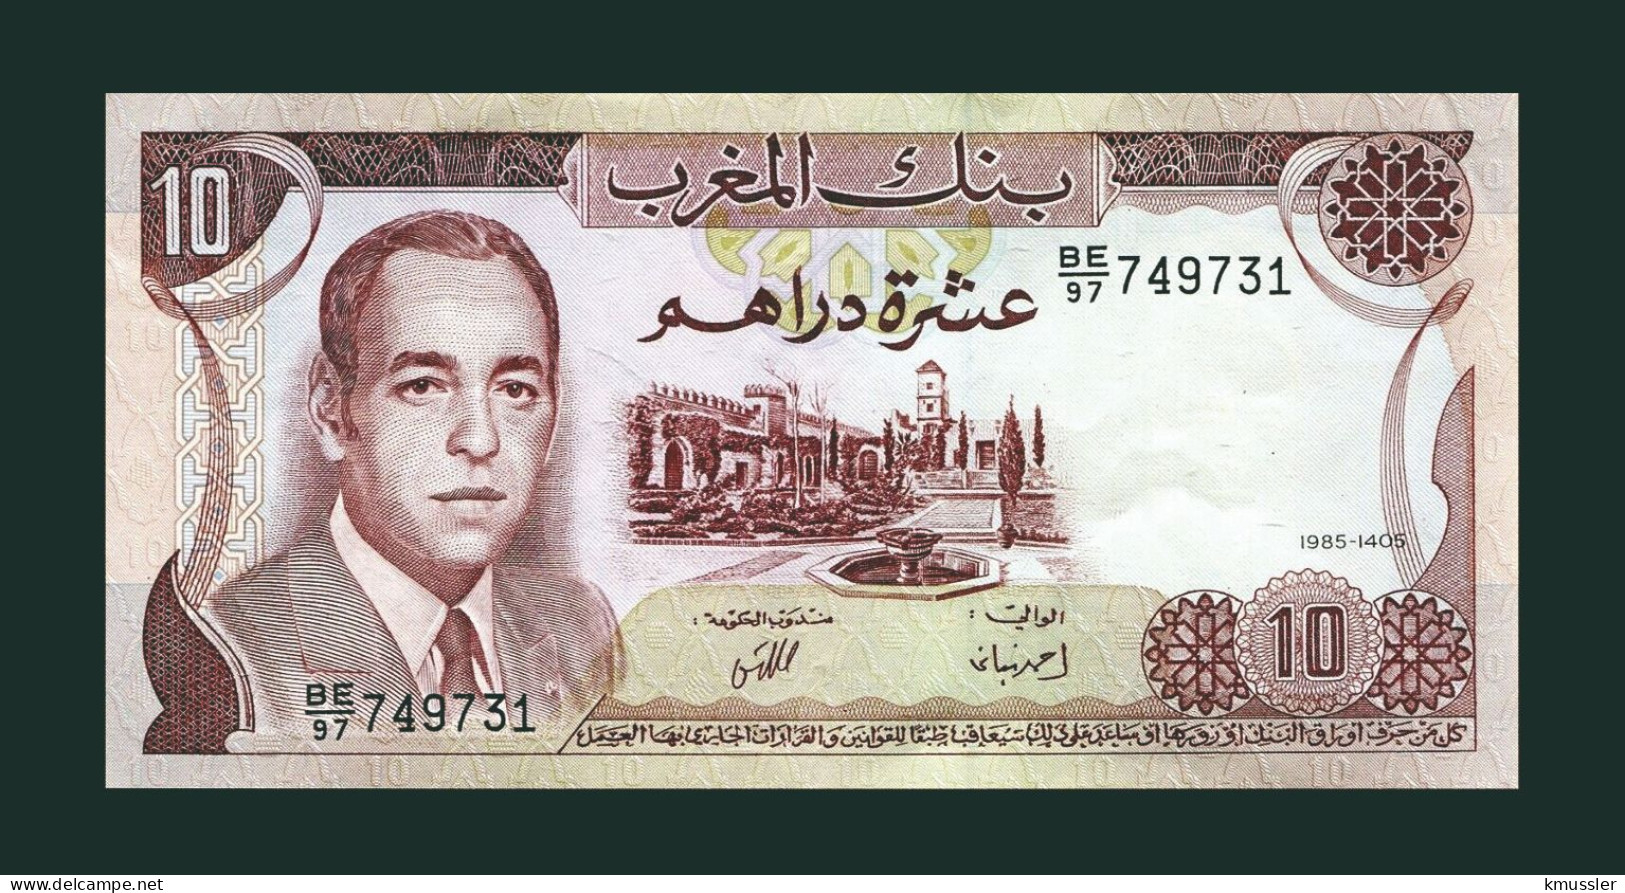 # # # Banknote Marokko (Morocco) 10 Dirham 1985 (P-57) UNC # # # - Marocco